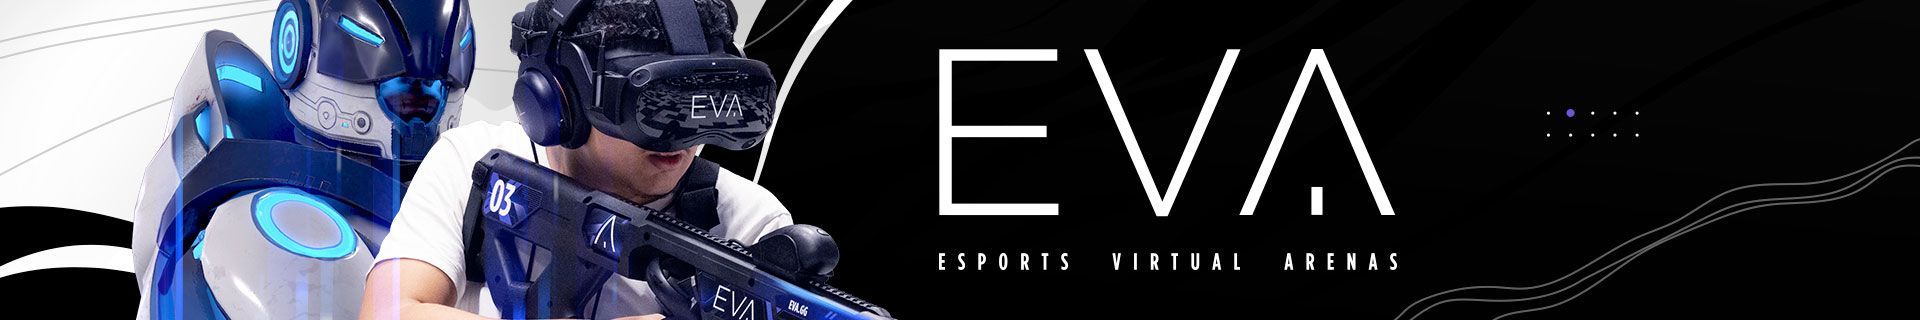 EVA (Esports Virtual Arenas) (главная)